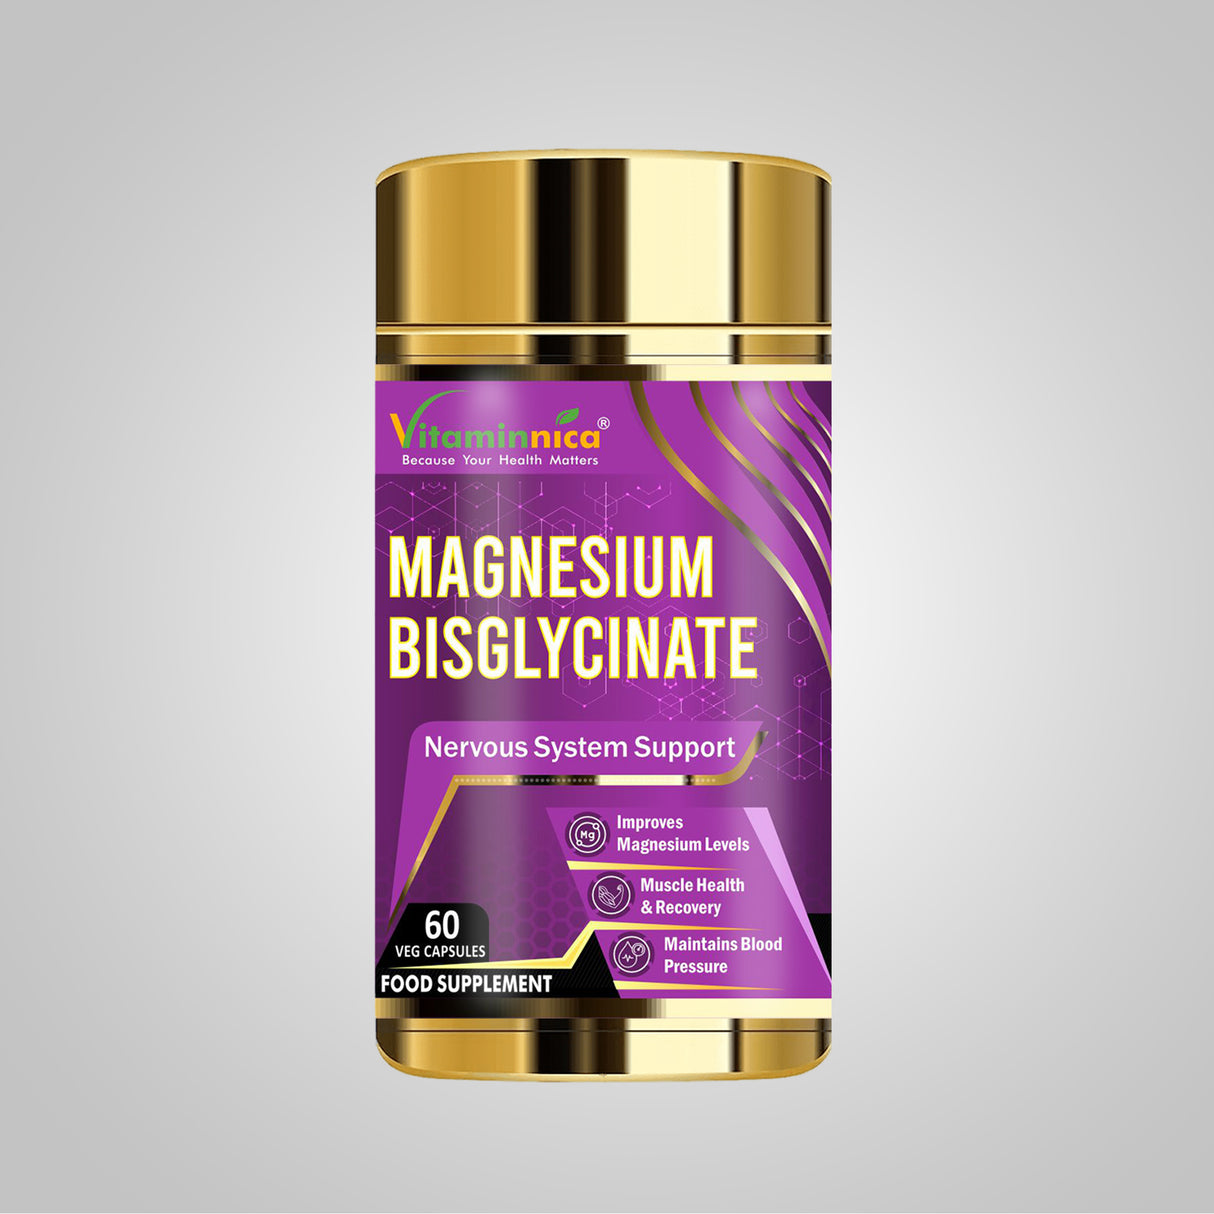 Vitaminnica Magnesium Bisglycinate- 60 Capsules